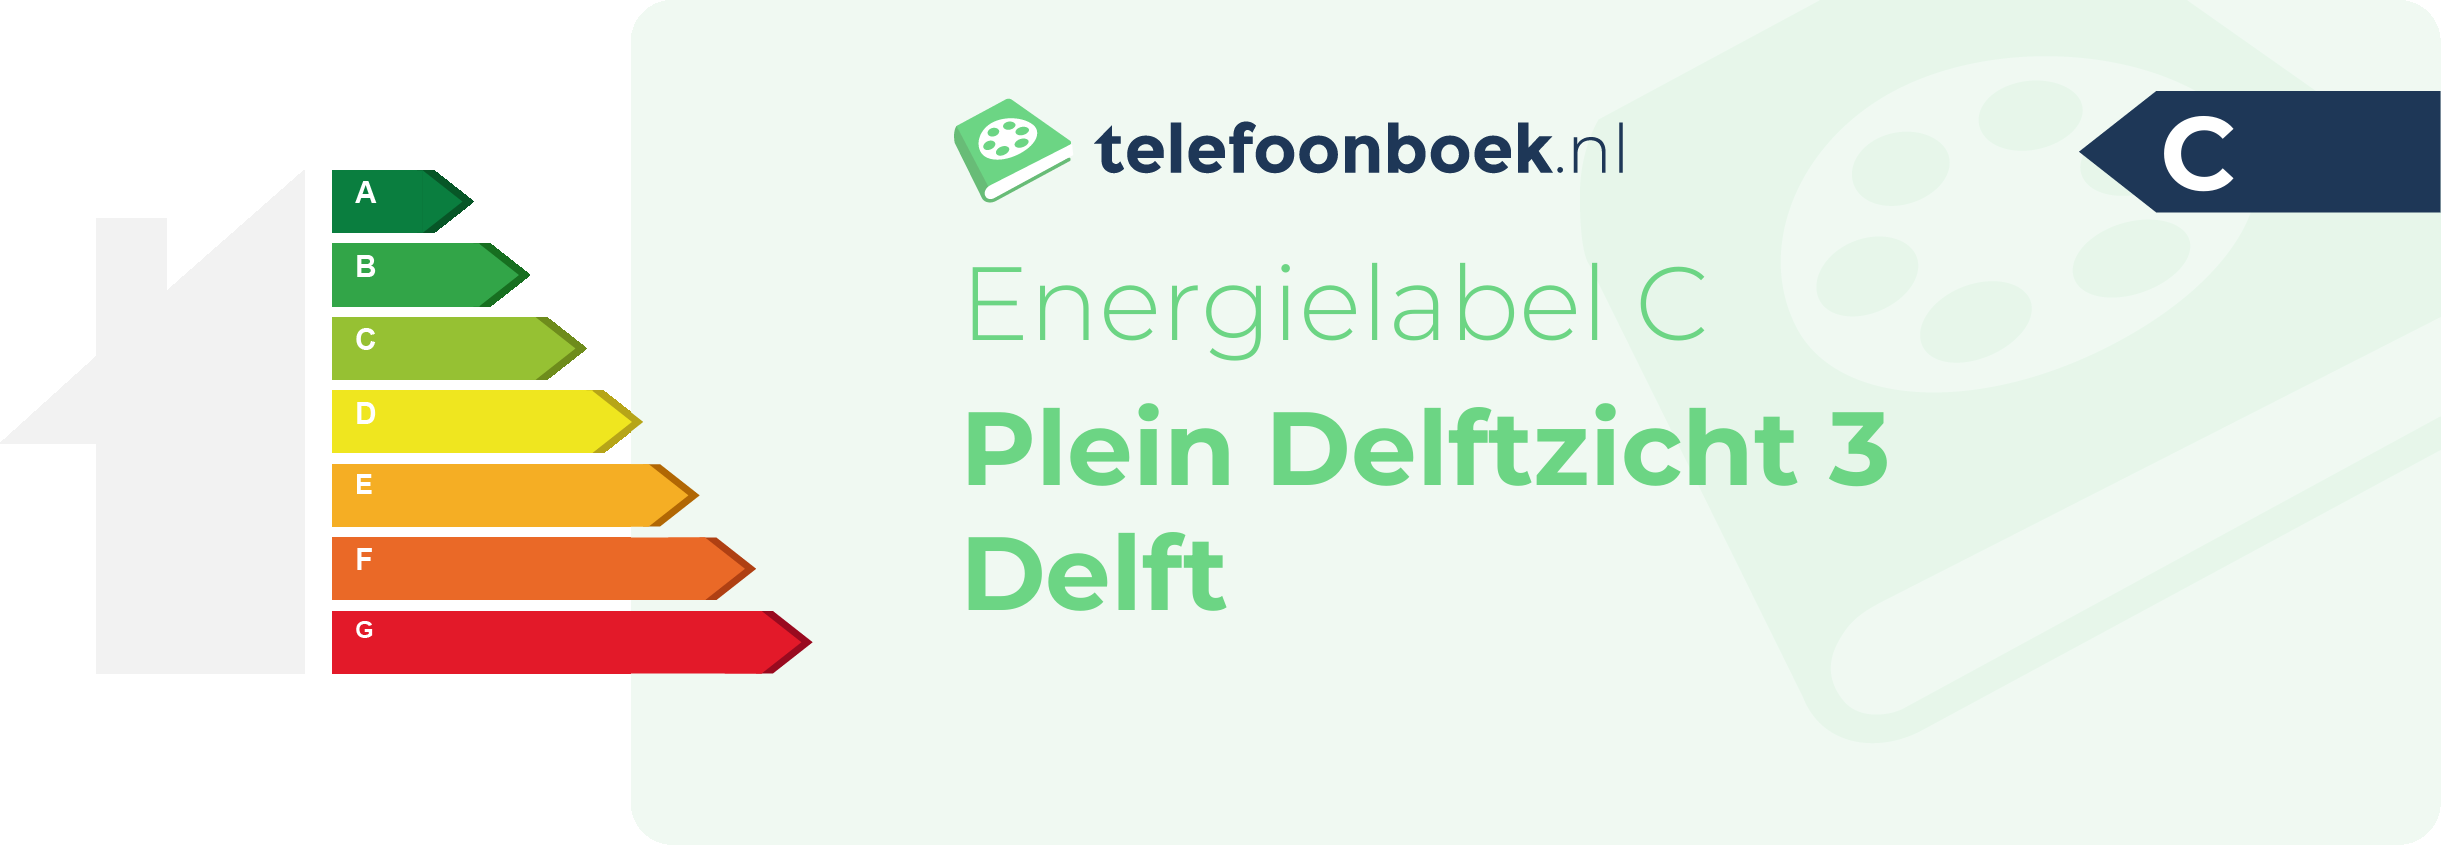 Energielabel Plein Delftzicht 3 Delft